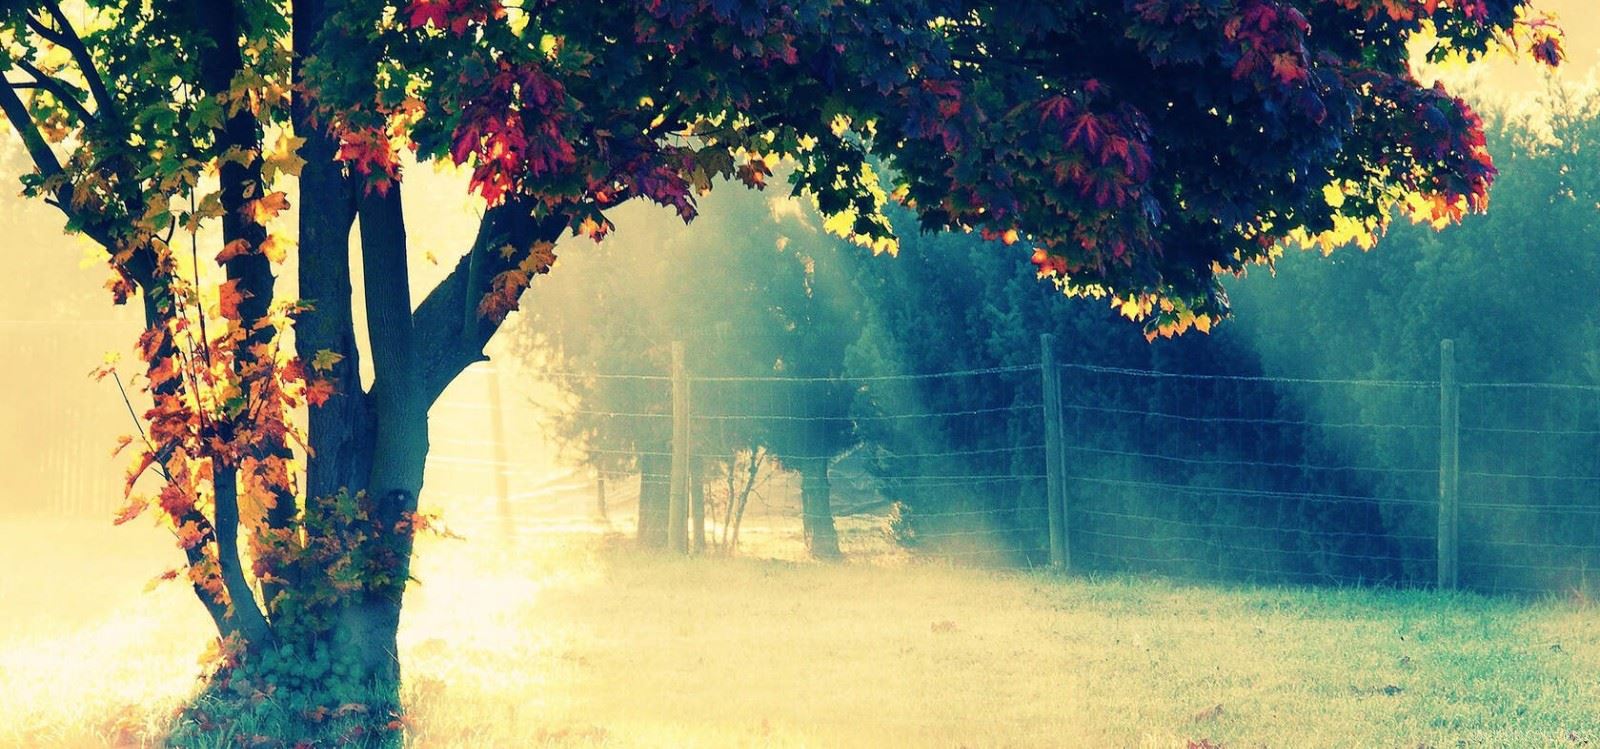 清晨雾色中的秋日风景梦幻桌面壁纸图片第1张